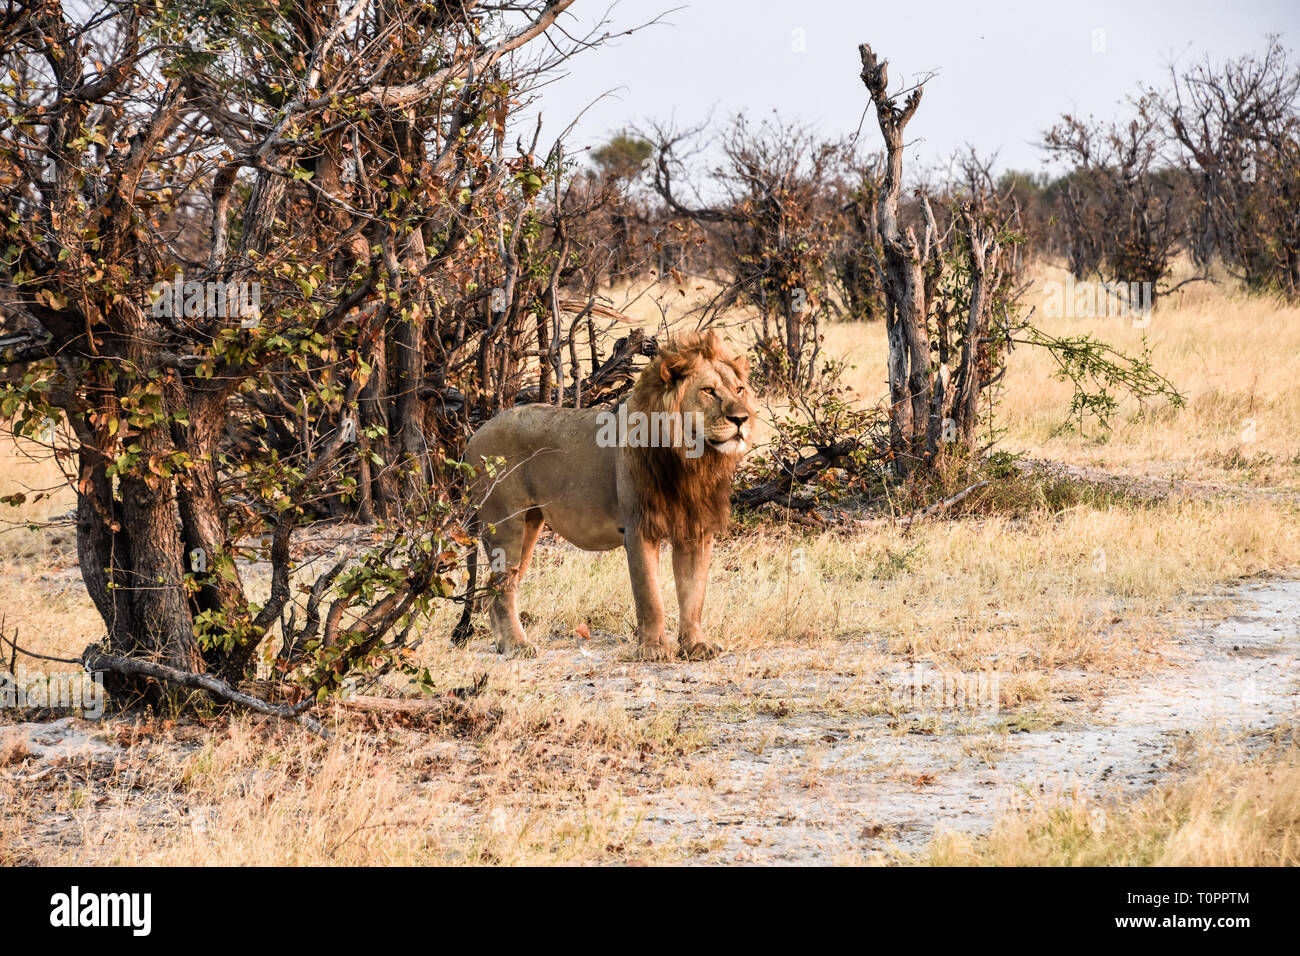 Savuti, Parc National de Chobe, au Botswana. Septembre 2017 - Majestic Lion regarde vers la droite. Banque D'Images